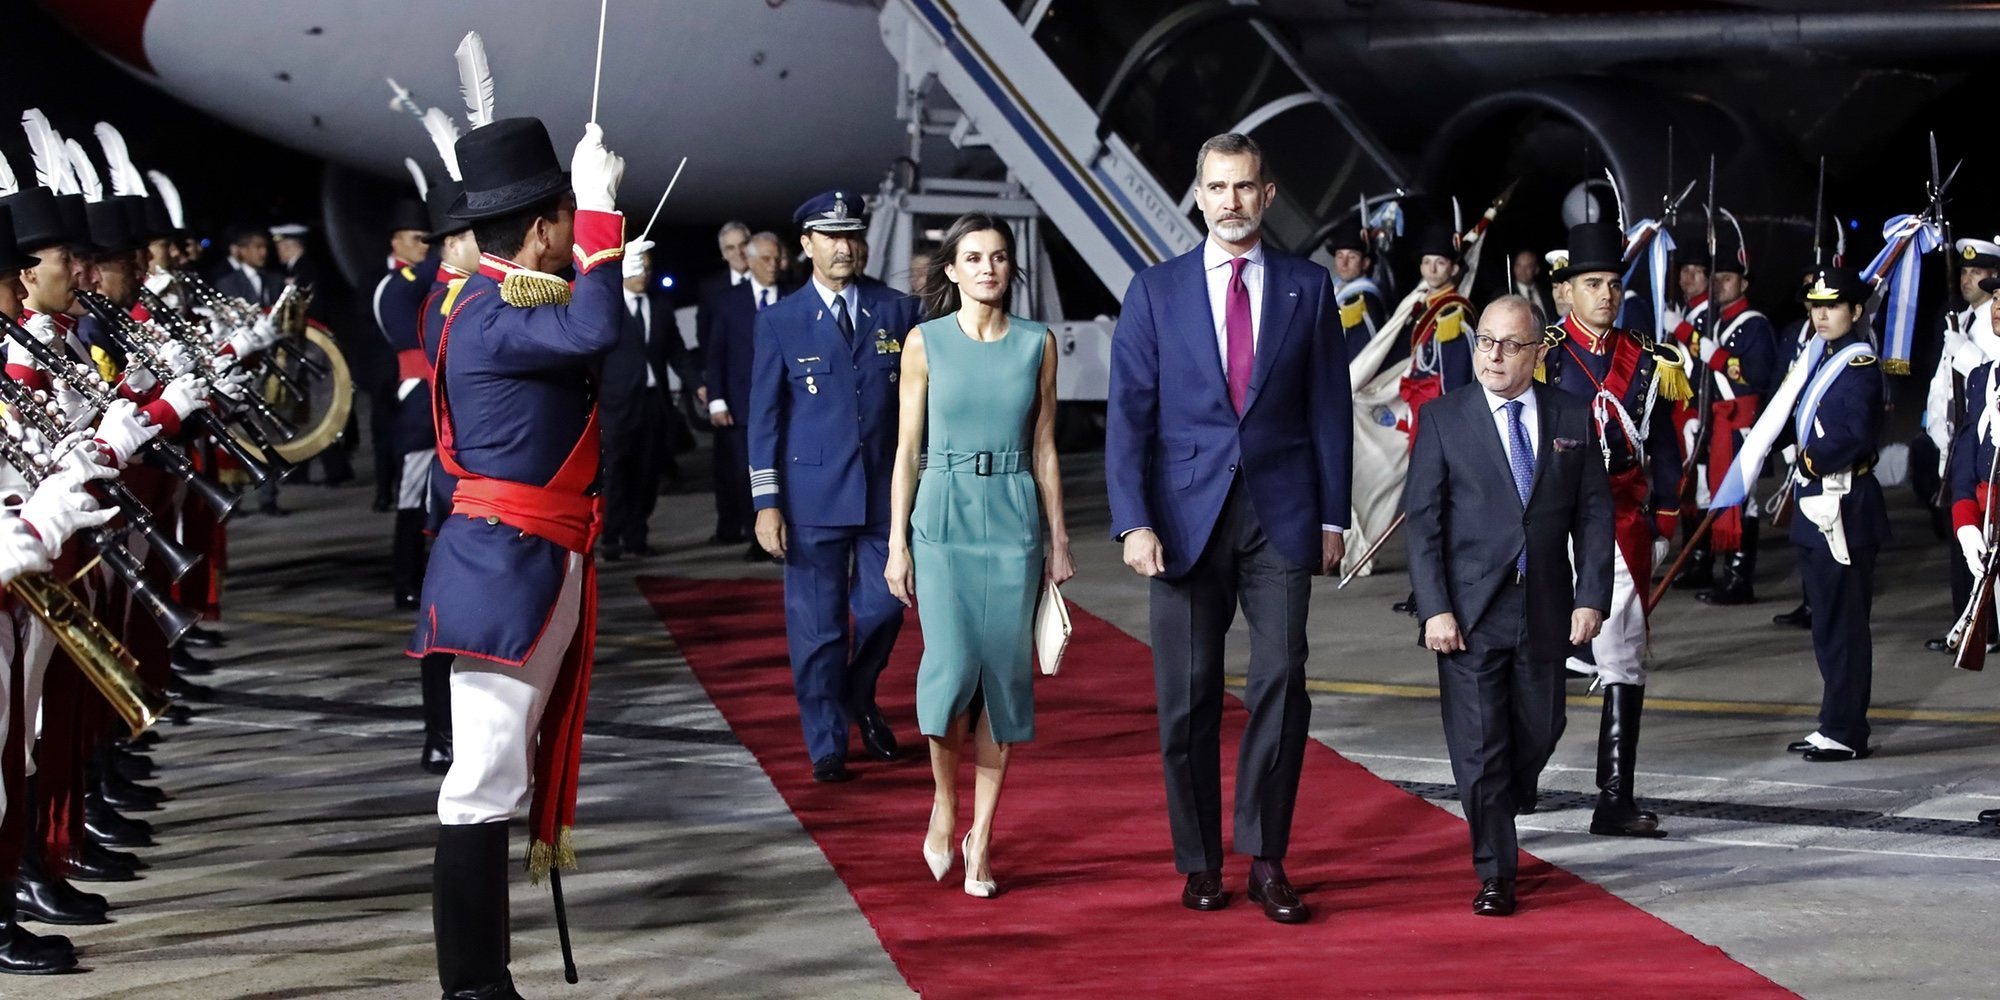 La llegada del Rey Felipe VI y la Reina Letizia a Argentina se retrasó una hora por culpa de una escalera